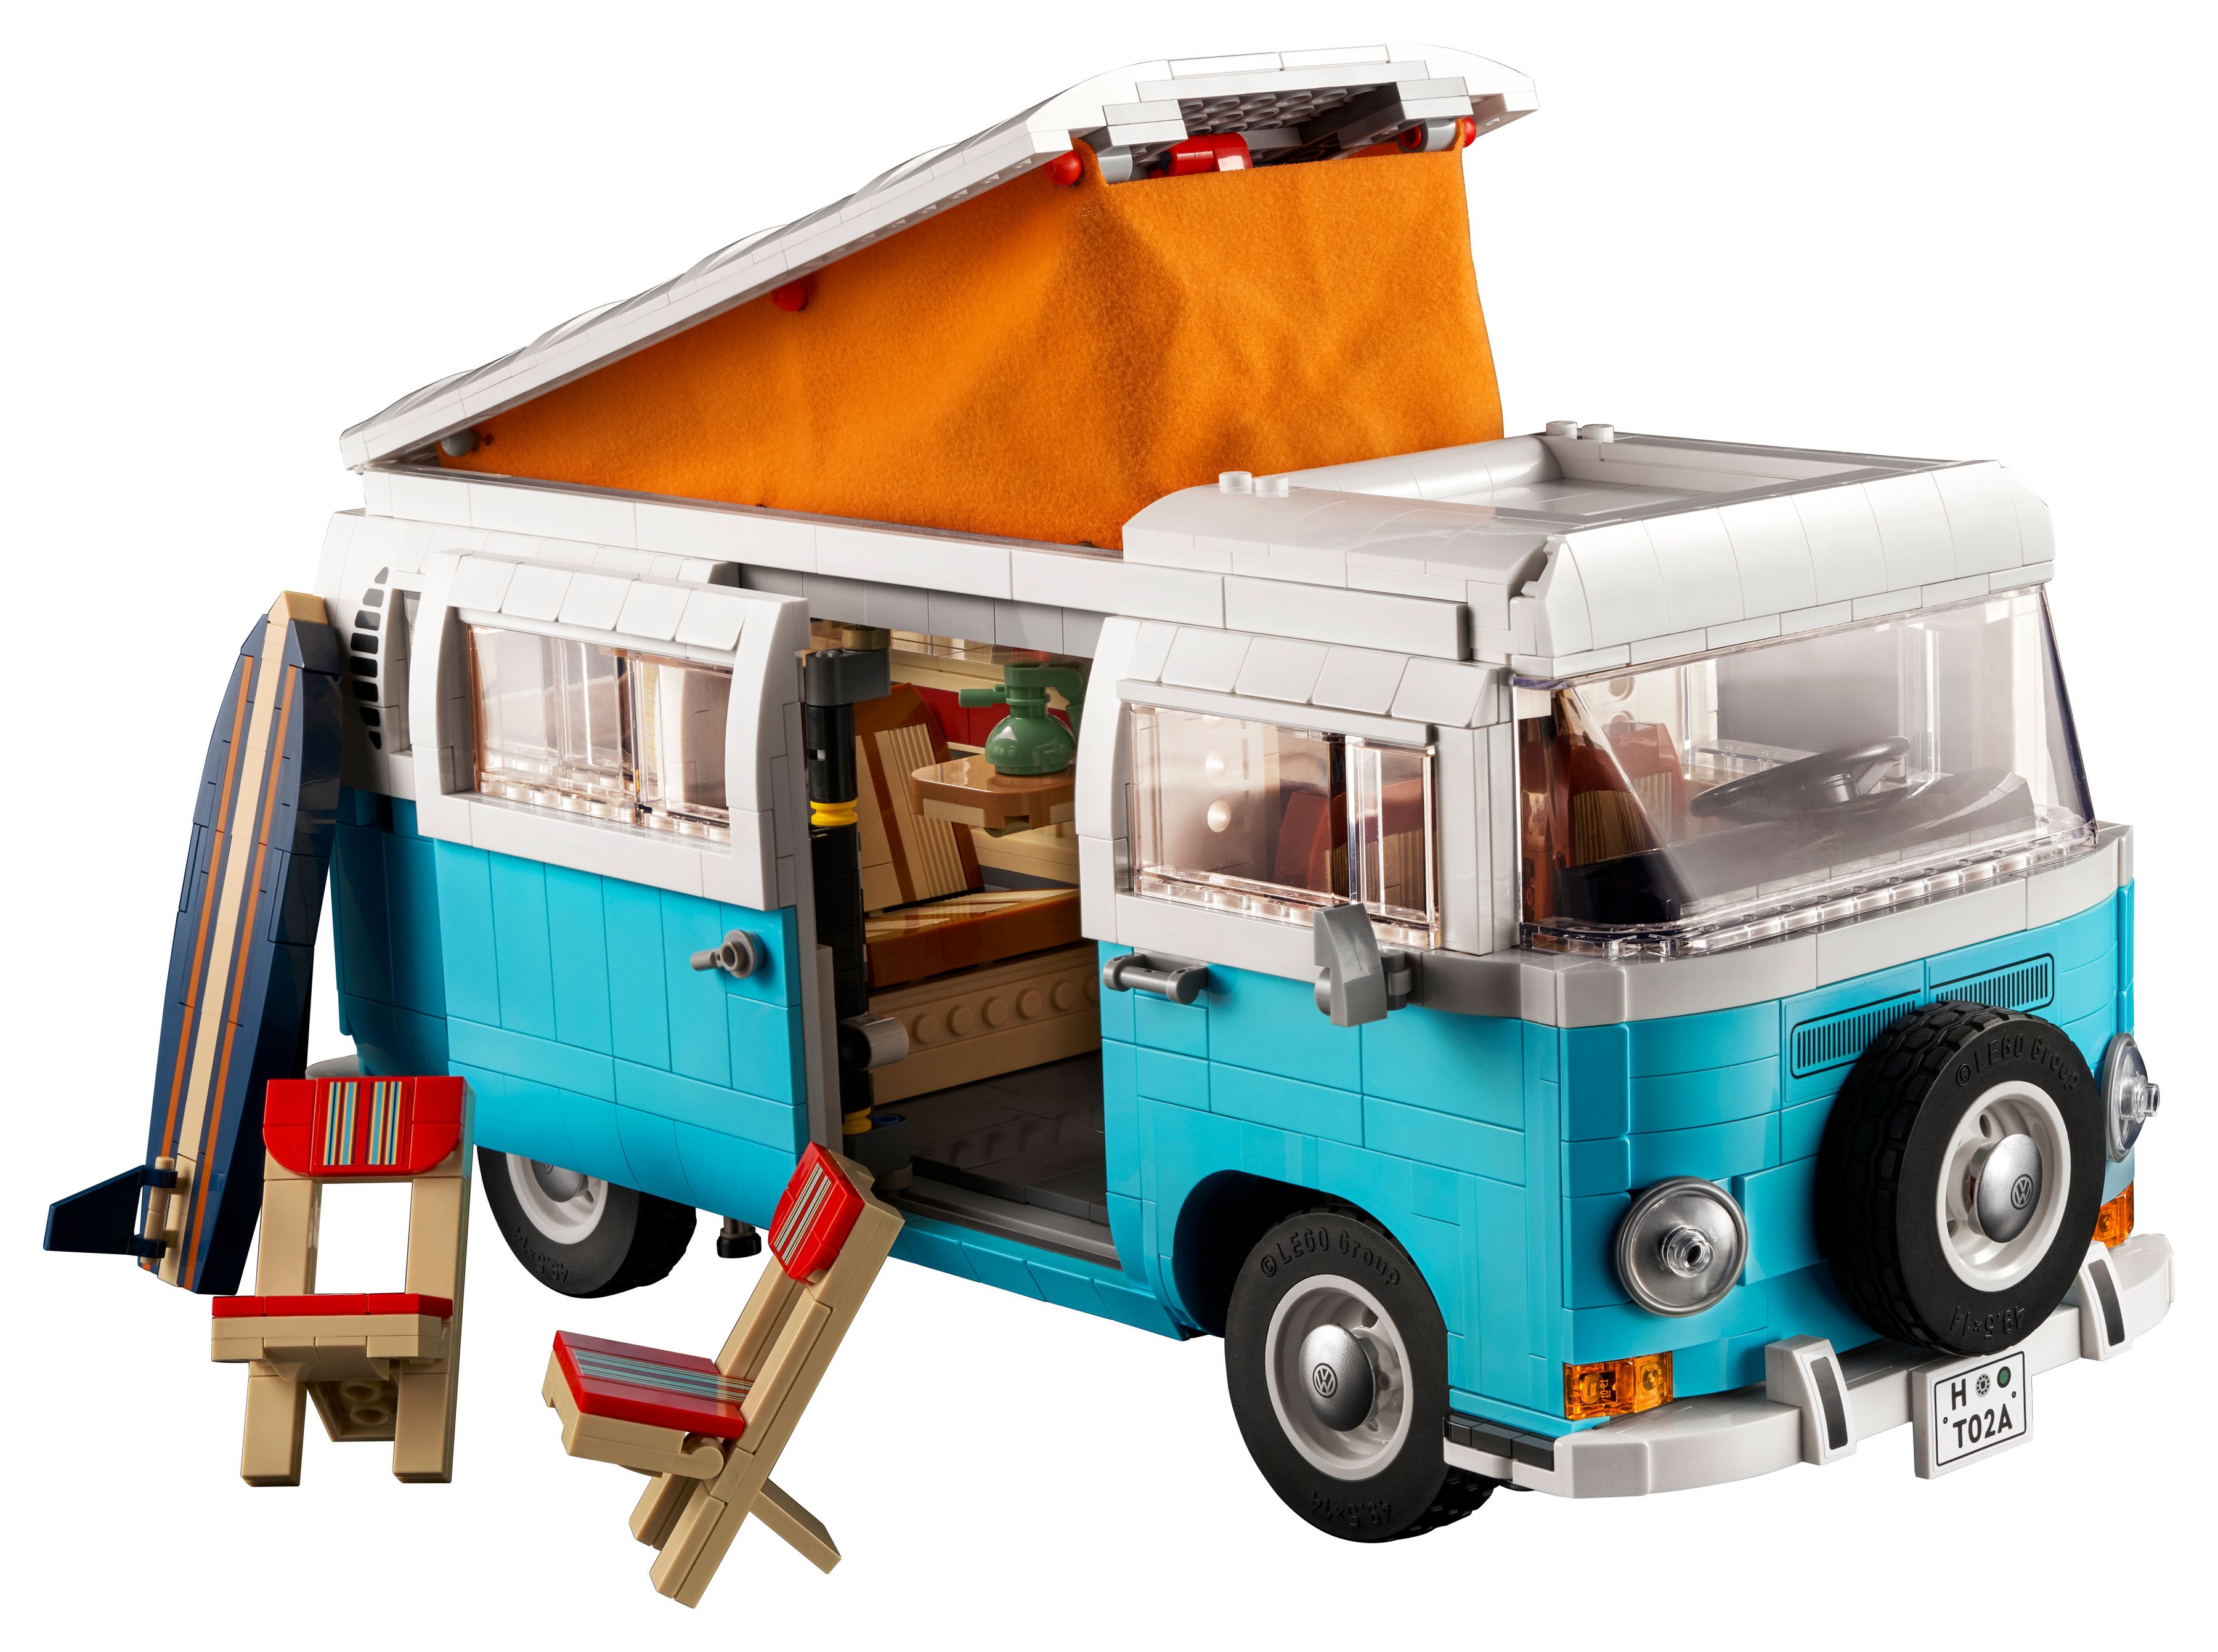 LEGO Advanced Models 10279 Volkswagen T2 Campingbus LEGO_10279_alt2.jpg